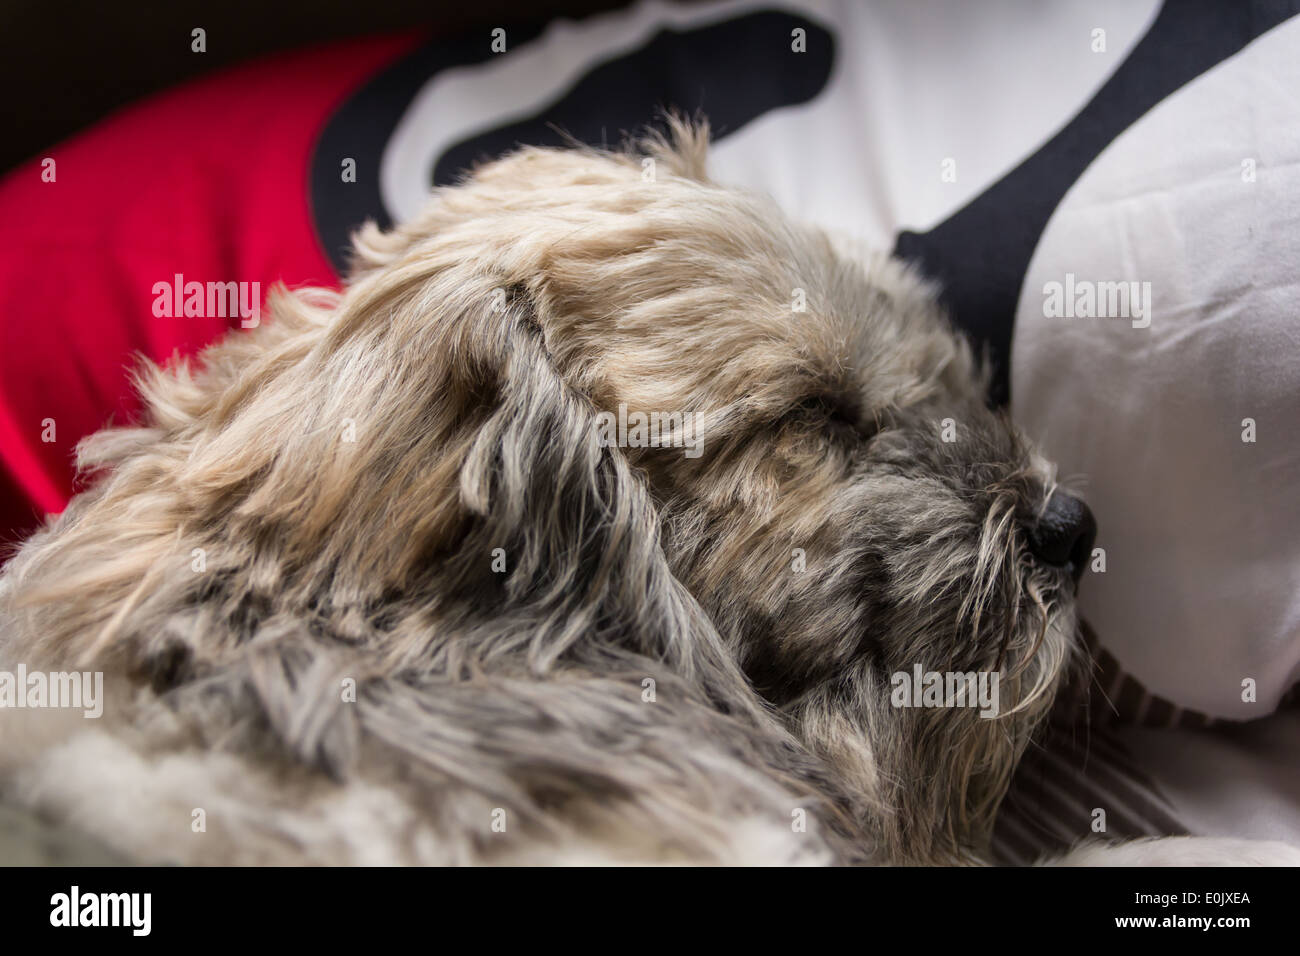 sleep dog with blanket Stock Photo